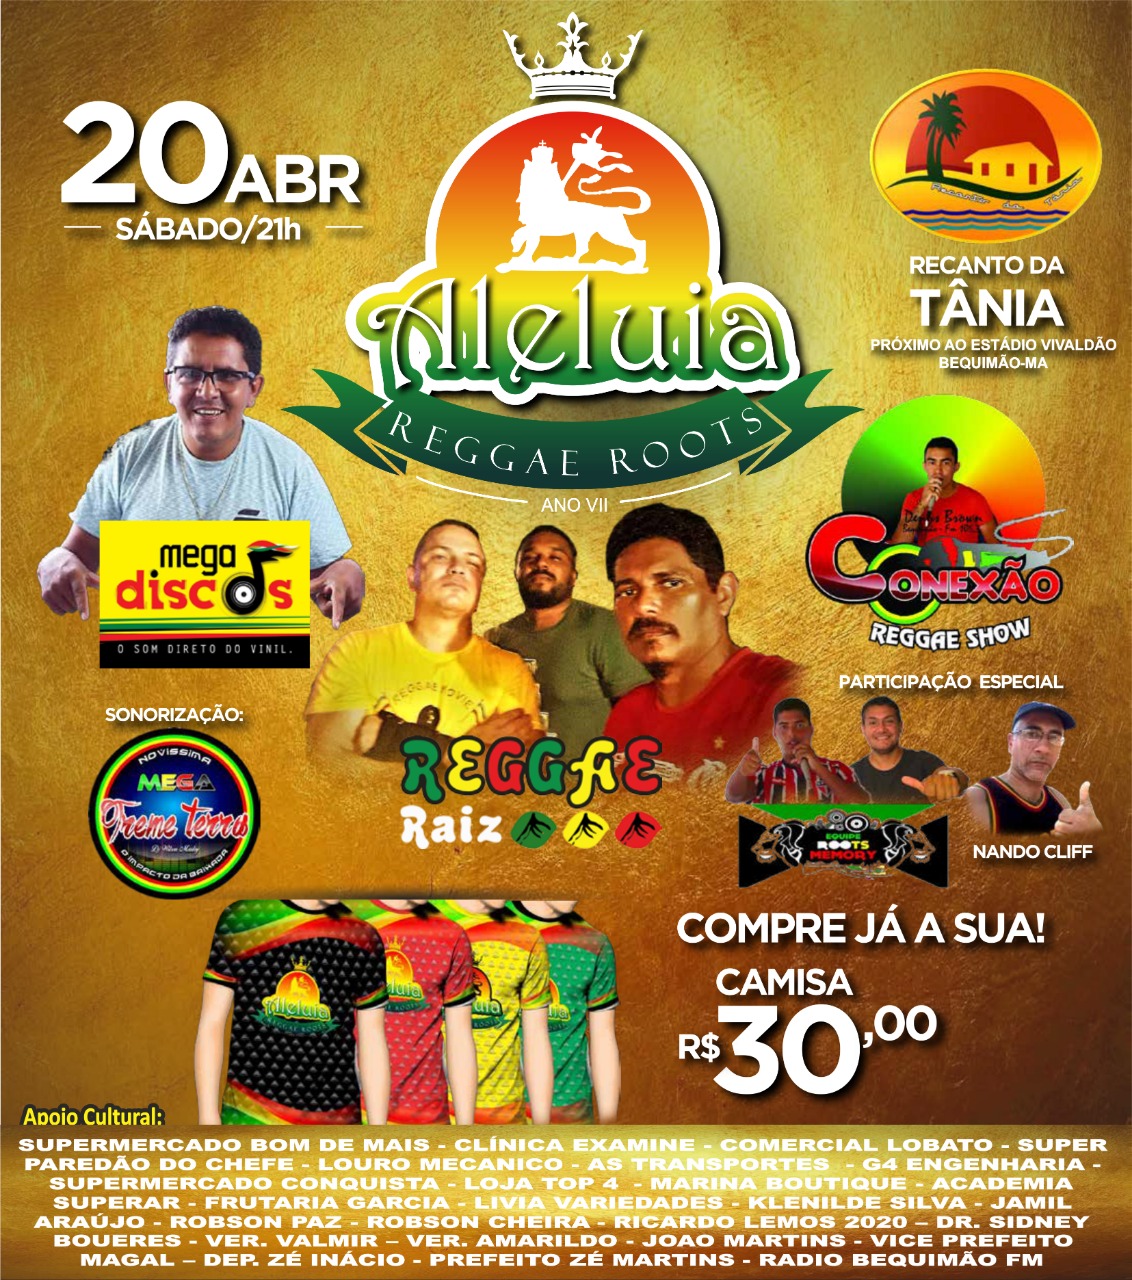 Foto de VII Aleluia Reggae Roots será realizado neste sábado na cidade de Bequimão-MA